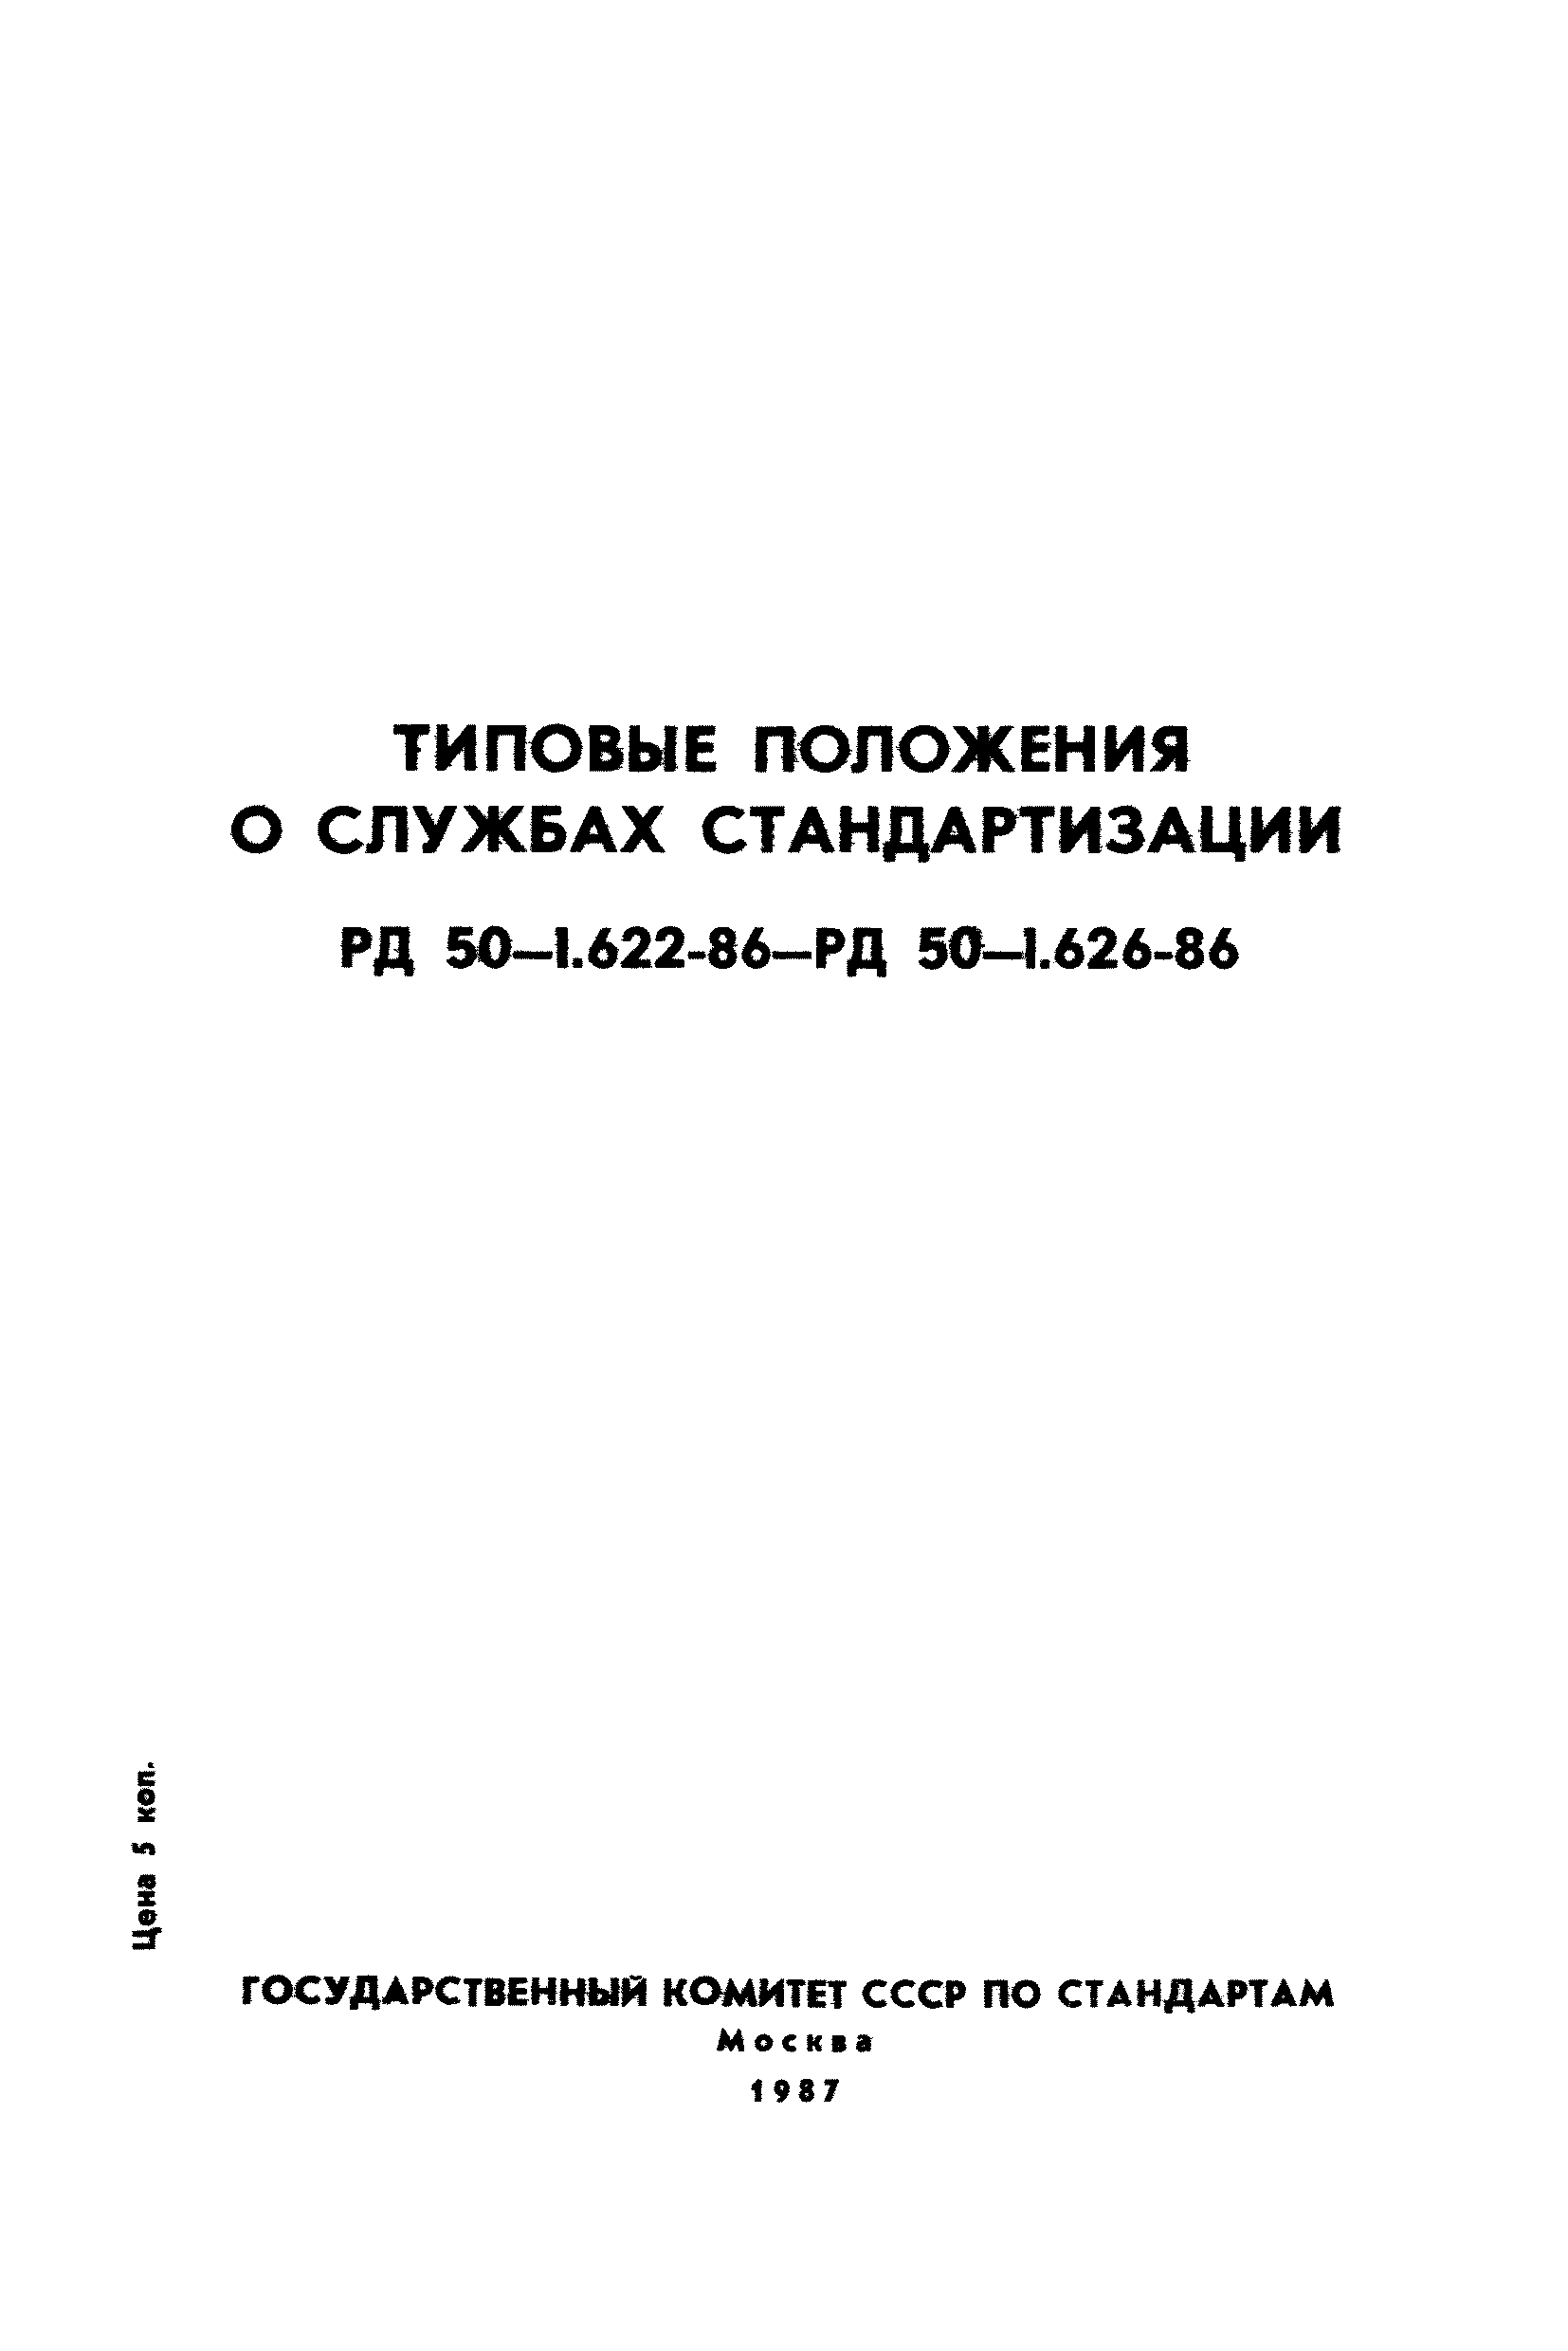 РД 50-1.625-86